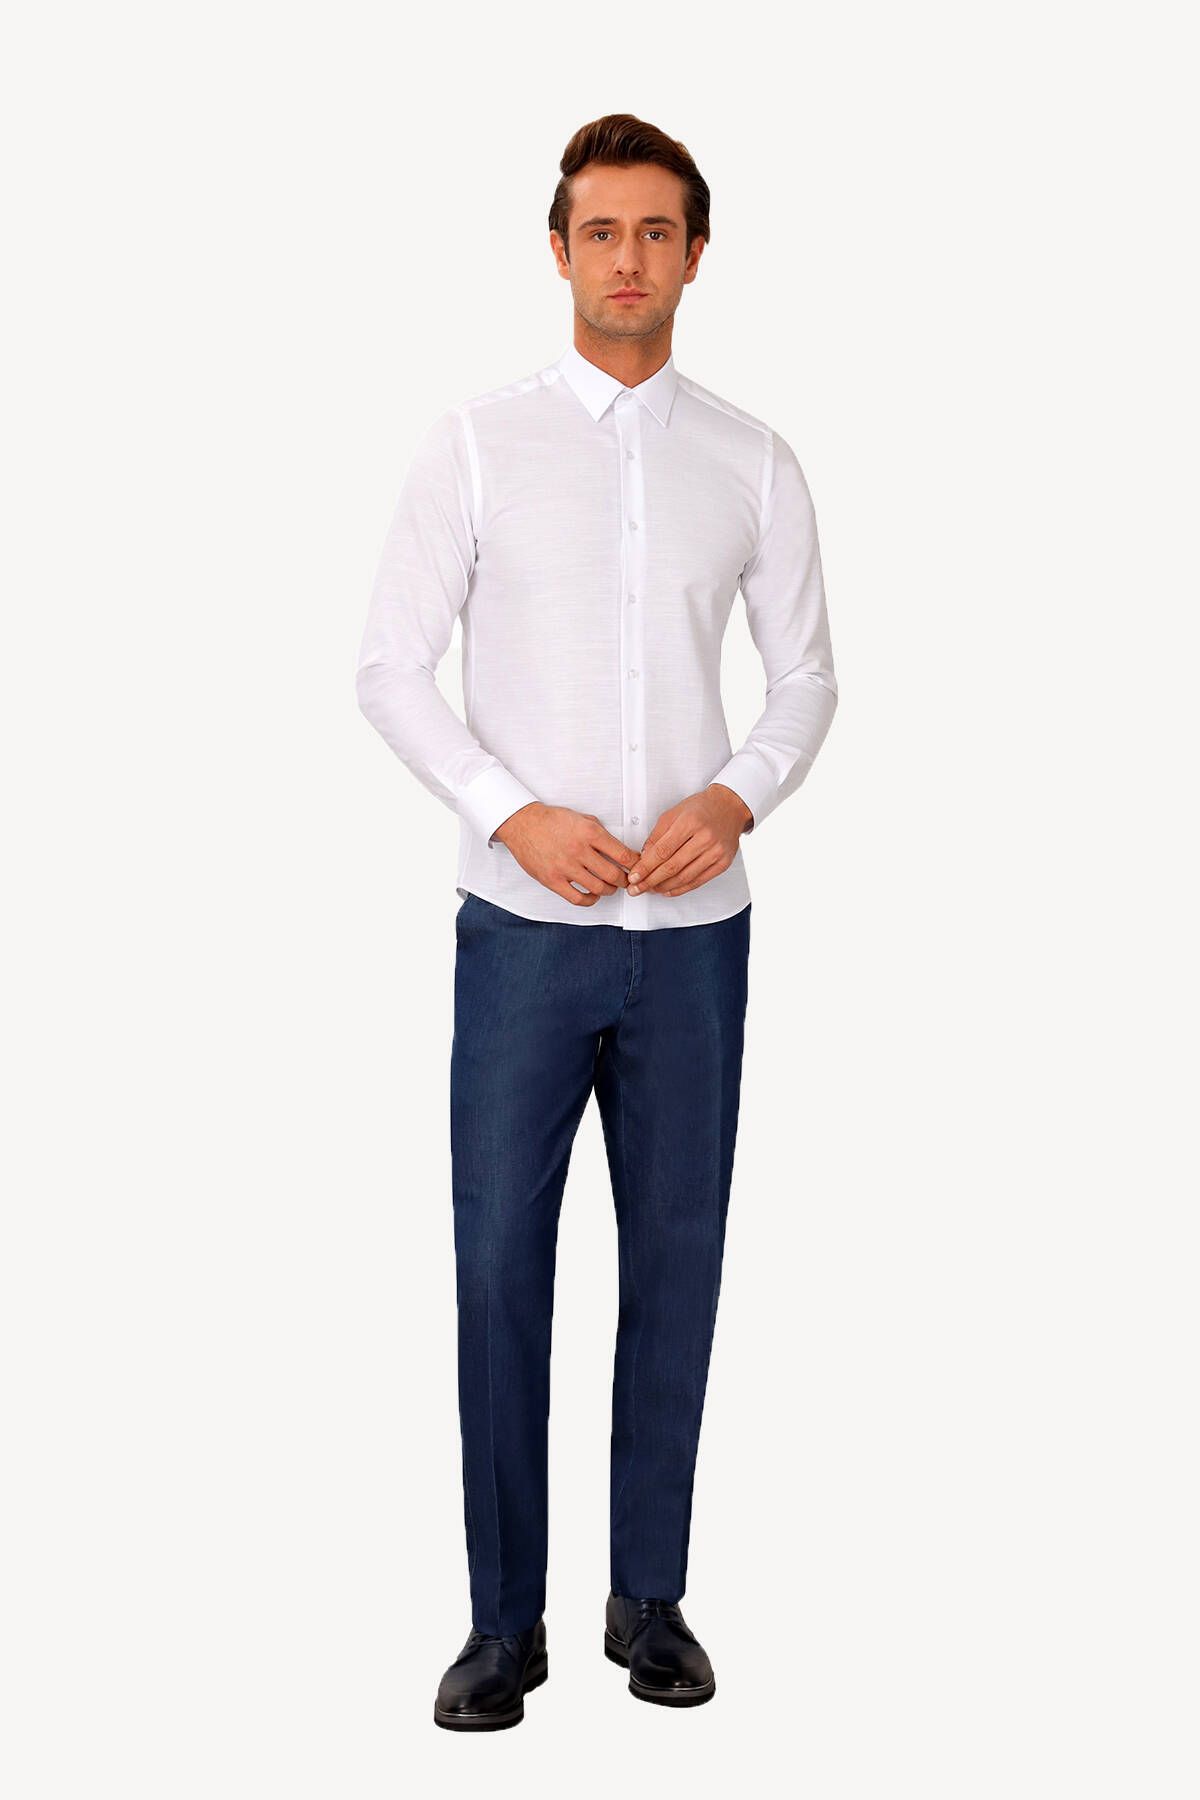 YSF Erkek Beyaz Uzun Kol Slim Fit Desenli Gömlek